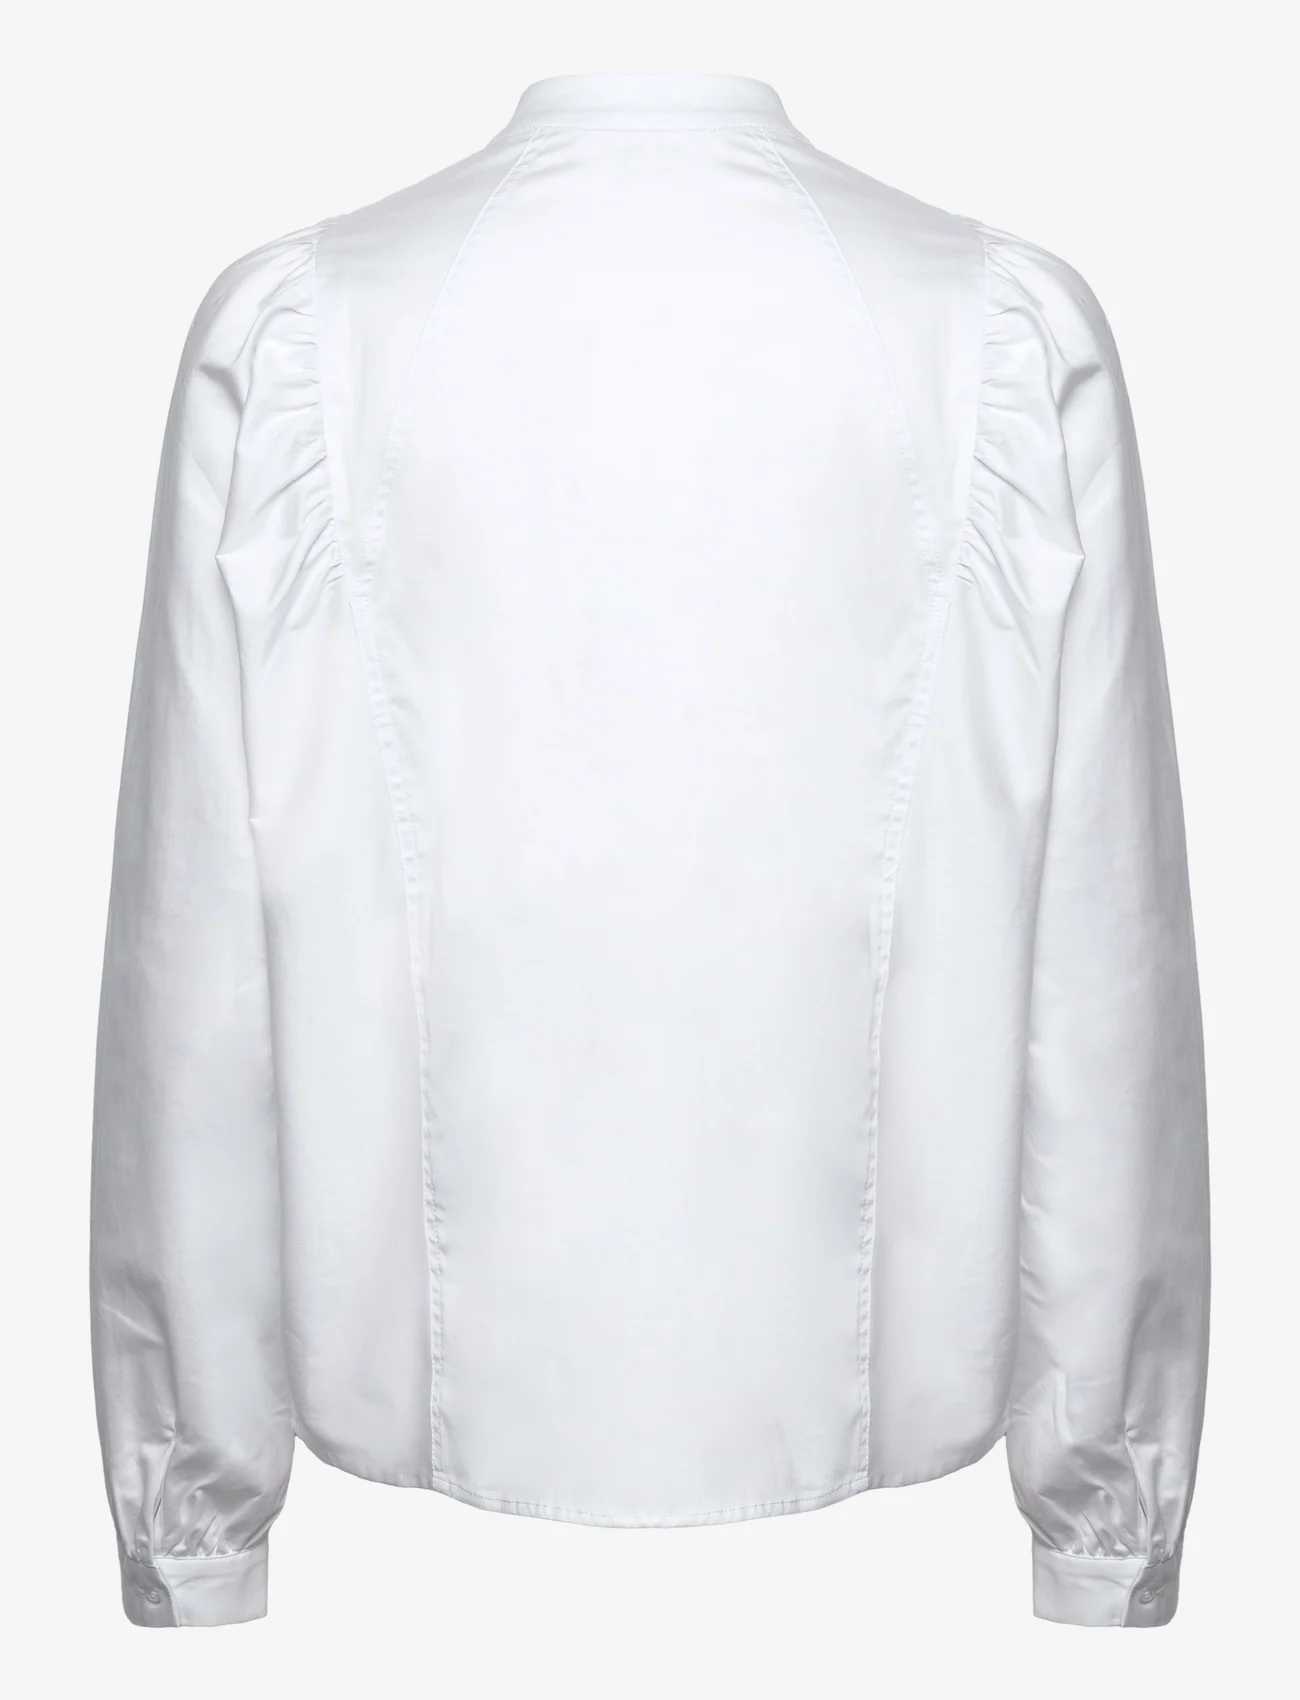 Levete Room - LR-ISLA SOLID - langærmede skjorter - l100 - white - 1